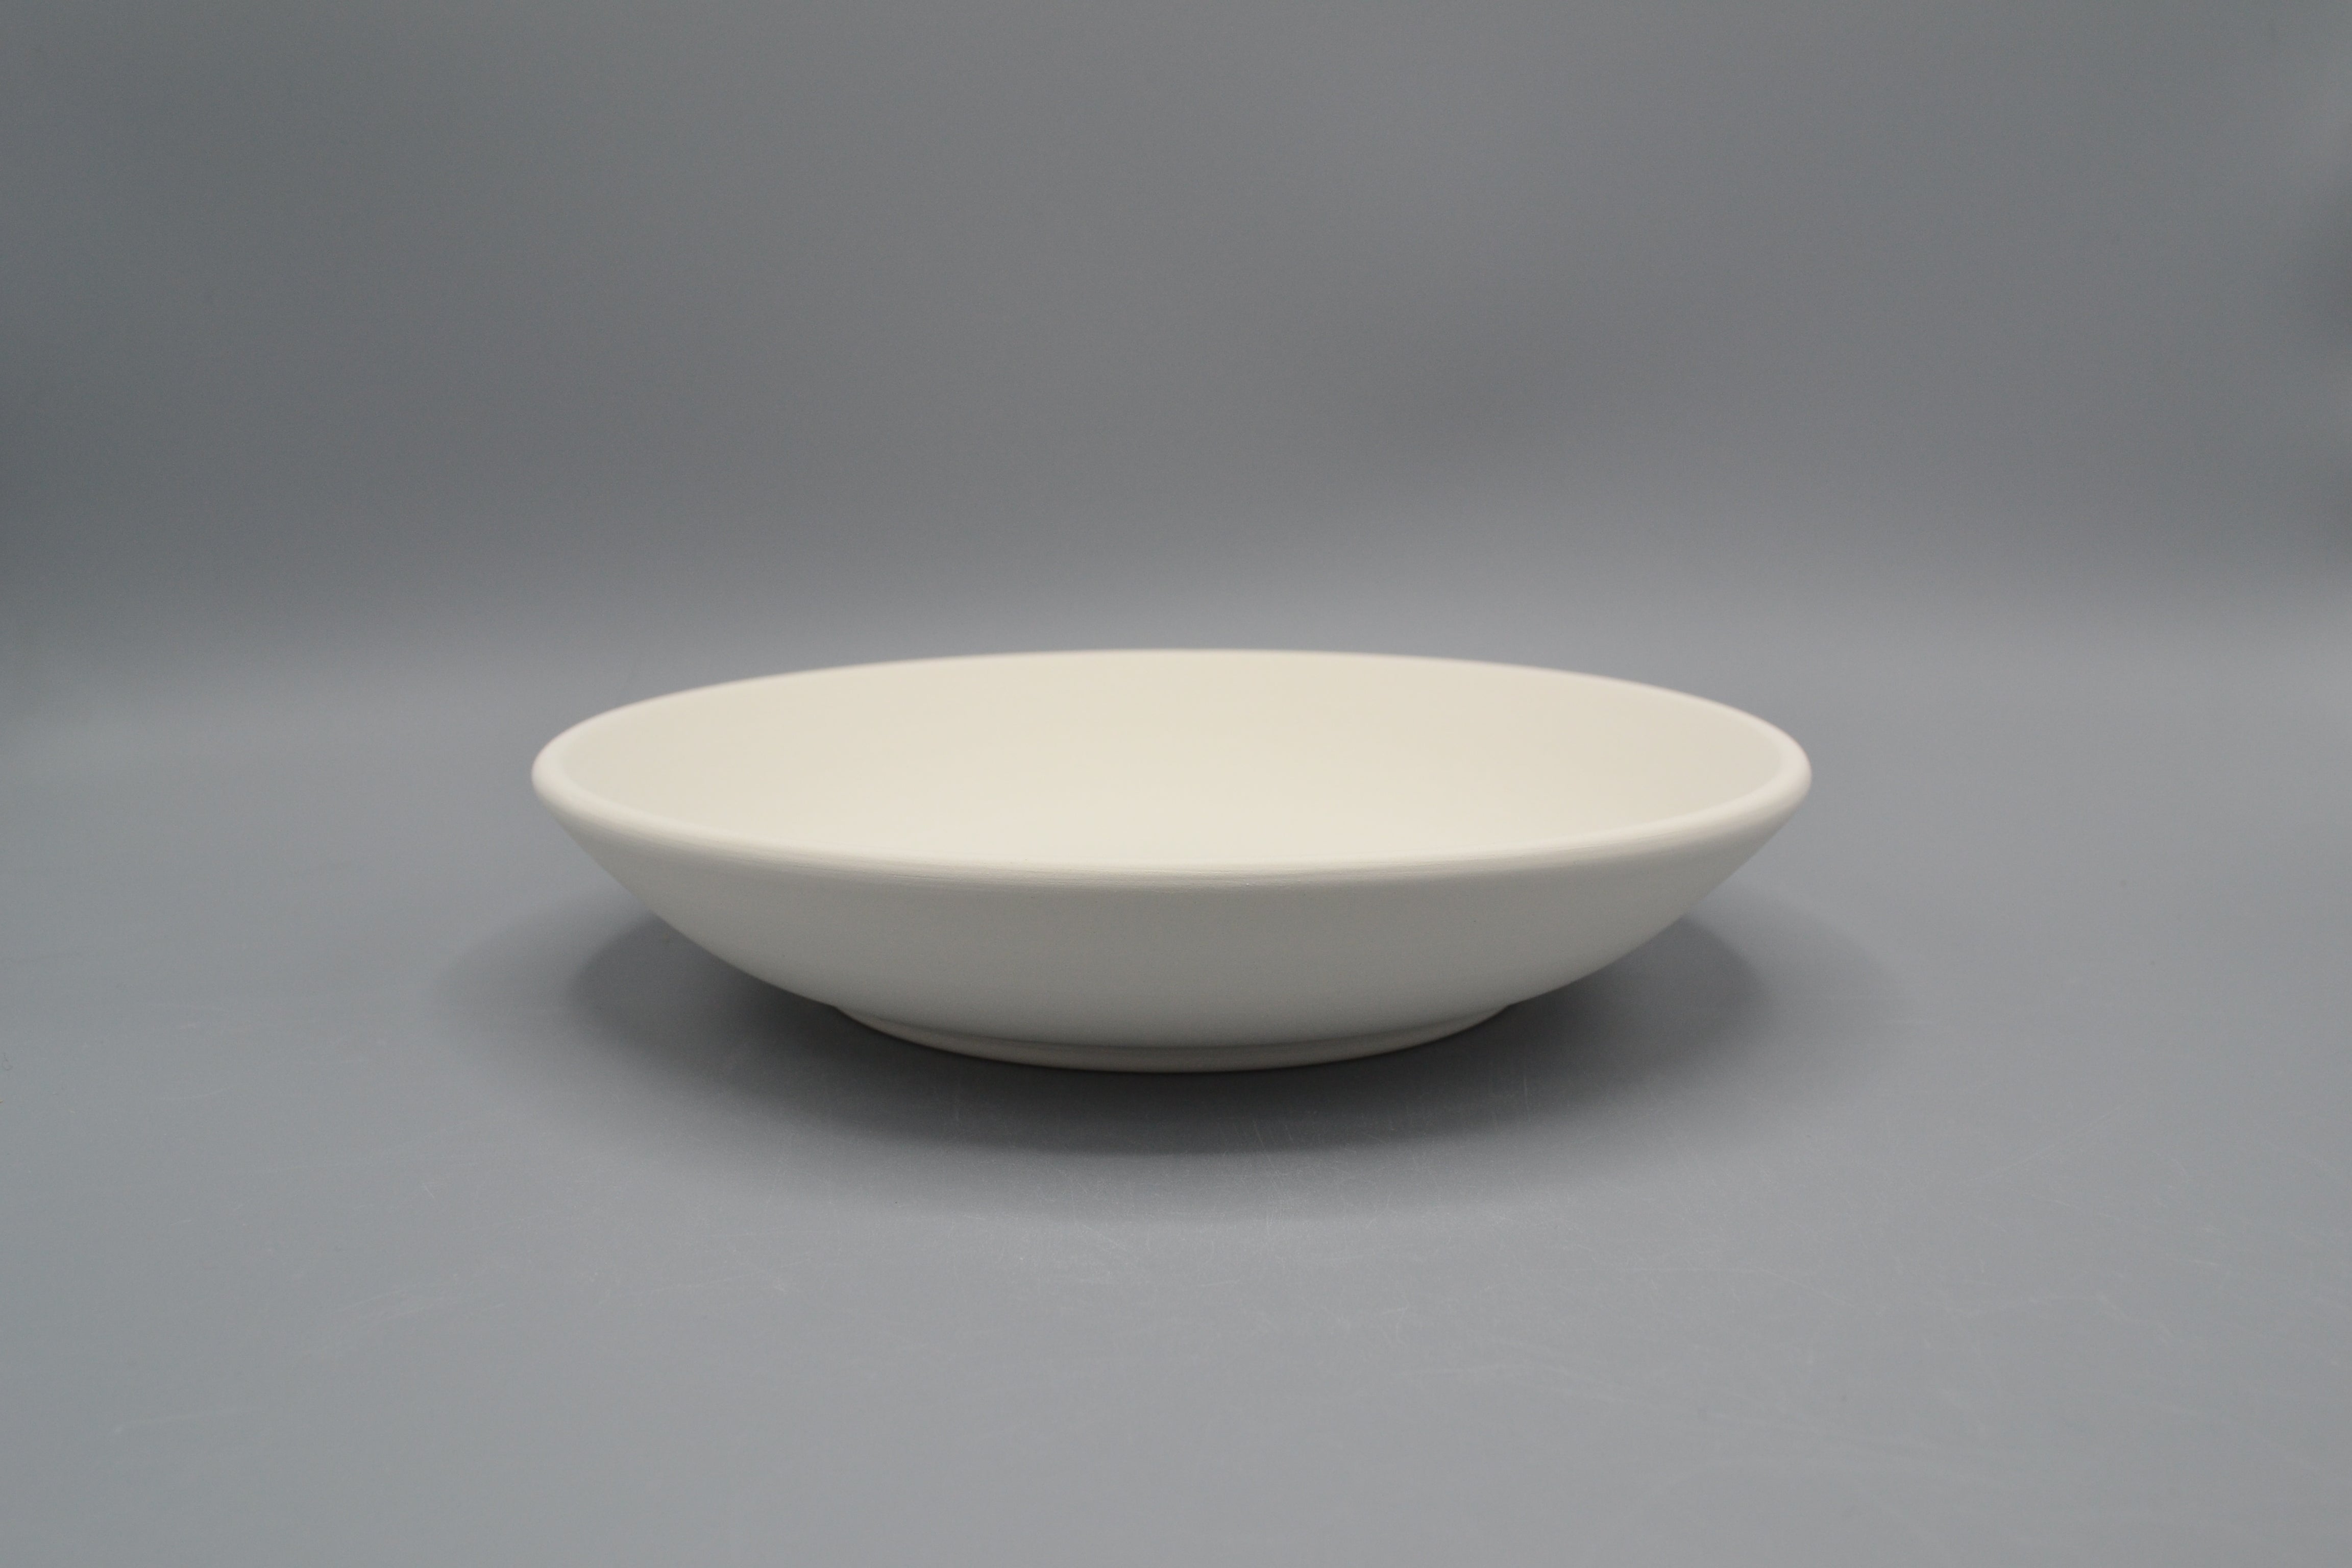 Fondina in ceramica semilavorata GREZZA da dipingere – Ceramiche Pigato